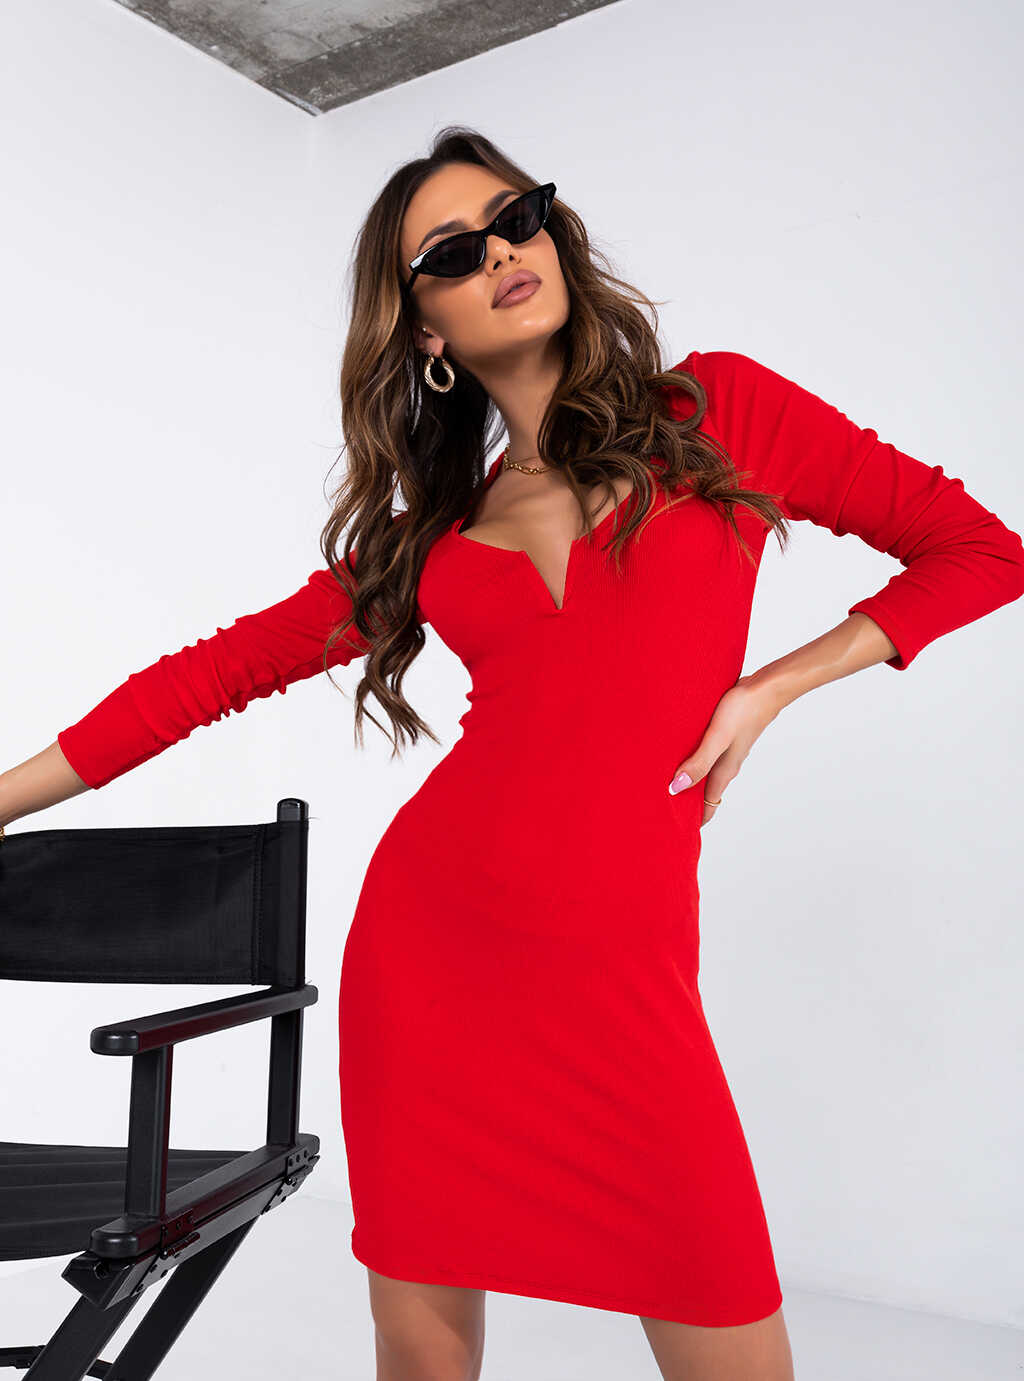 Дамска рокля TEREZA RED  https://bvseductive.com/products/womans-s-dresses-tereza-red  модерна рокля в червен цвят с вталена кройка, подчертаваща фигурата комфортен модел с изрязано деколте отличен избор за Вашата впечатляваща визия 85 % памуk 10